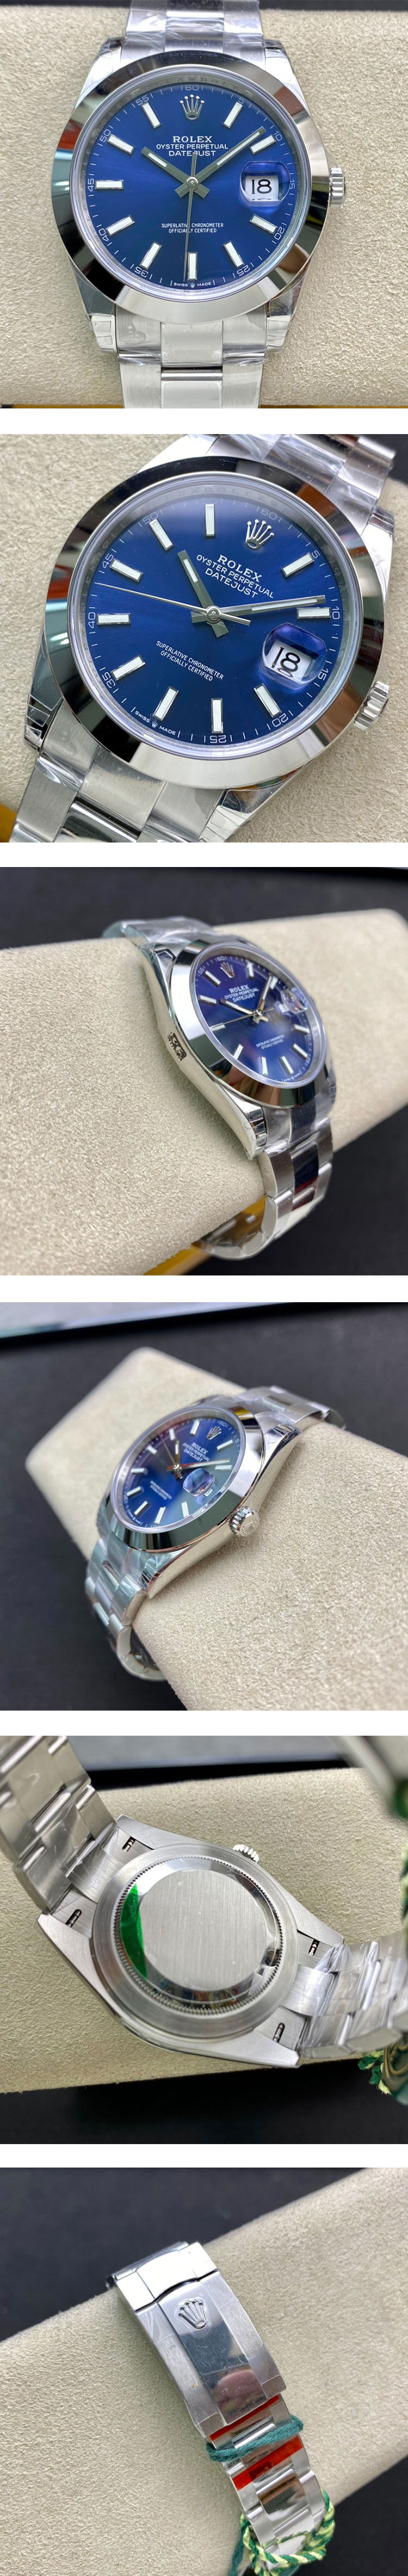 最高級ロレックスコピー時計 デイトジャスト M126300-0001 ブルー OY